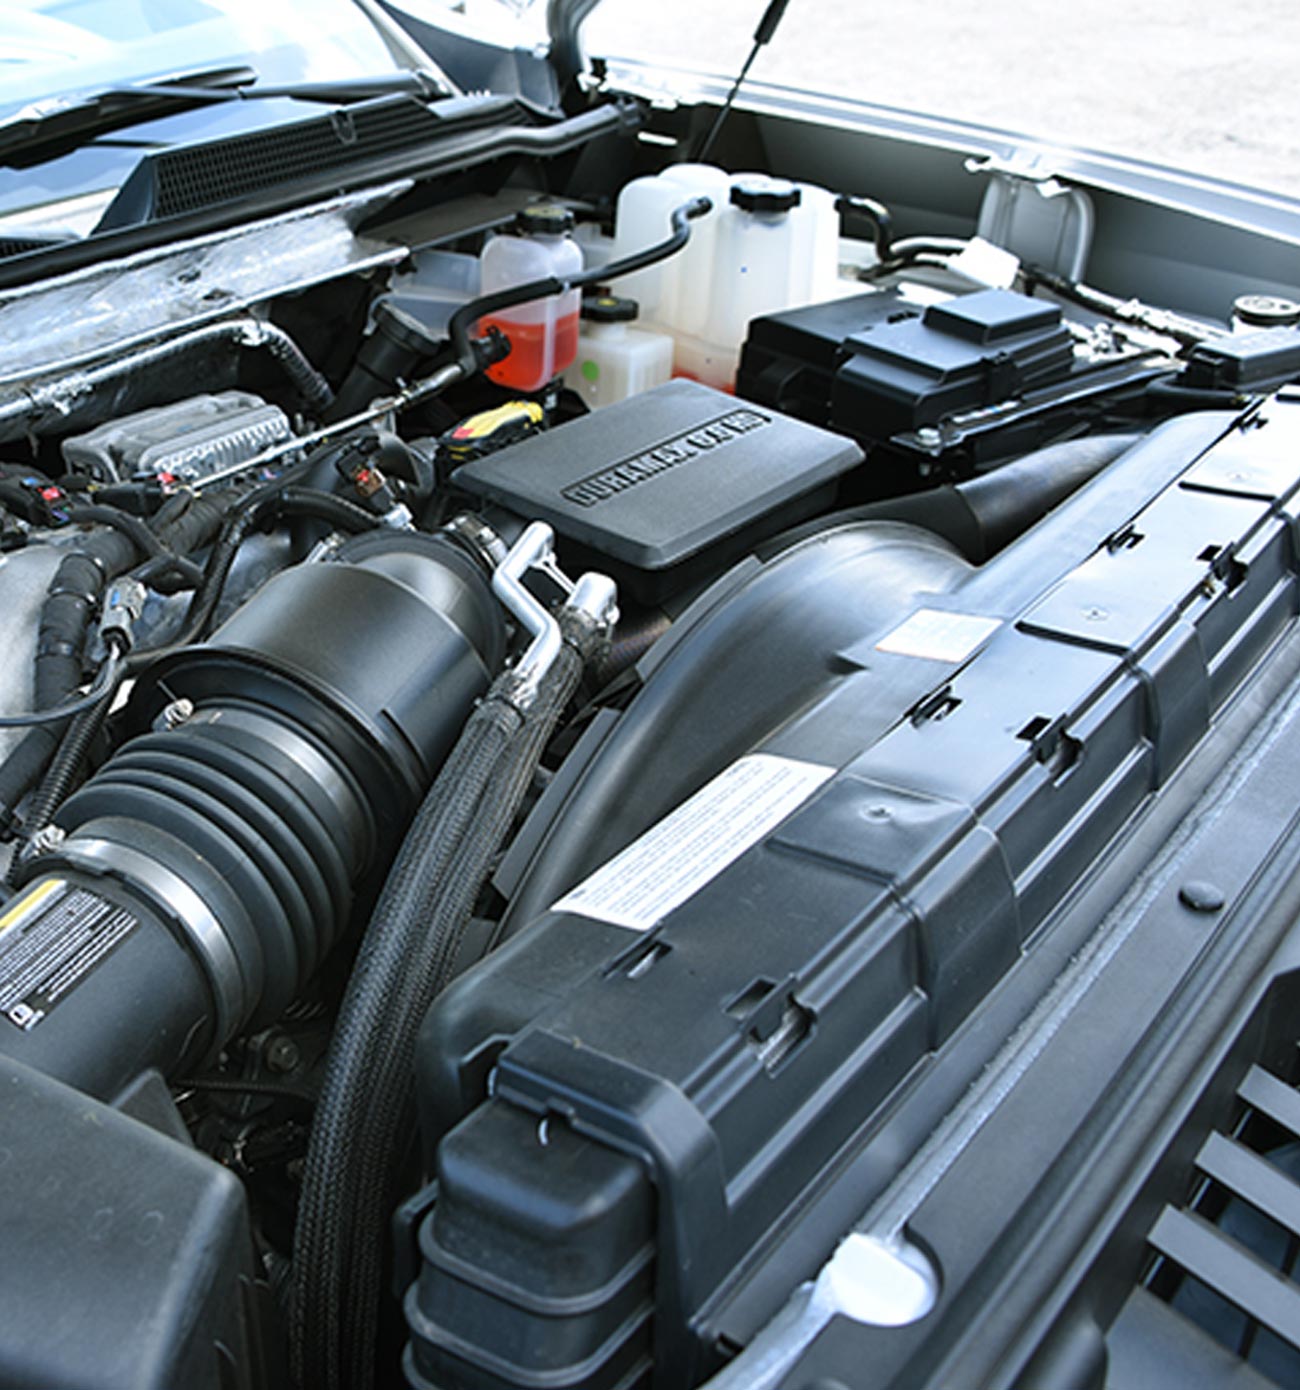 GM 6.6-liter Duramax diesel engine in a car